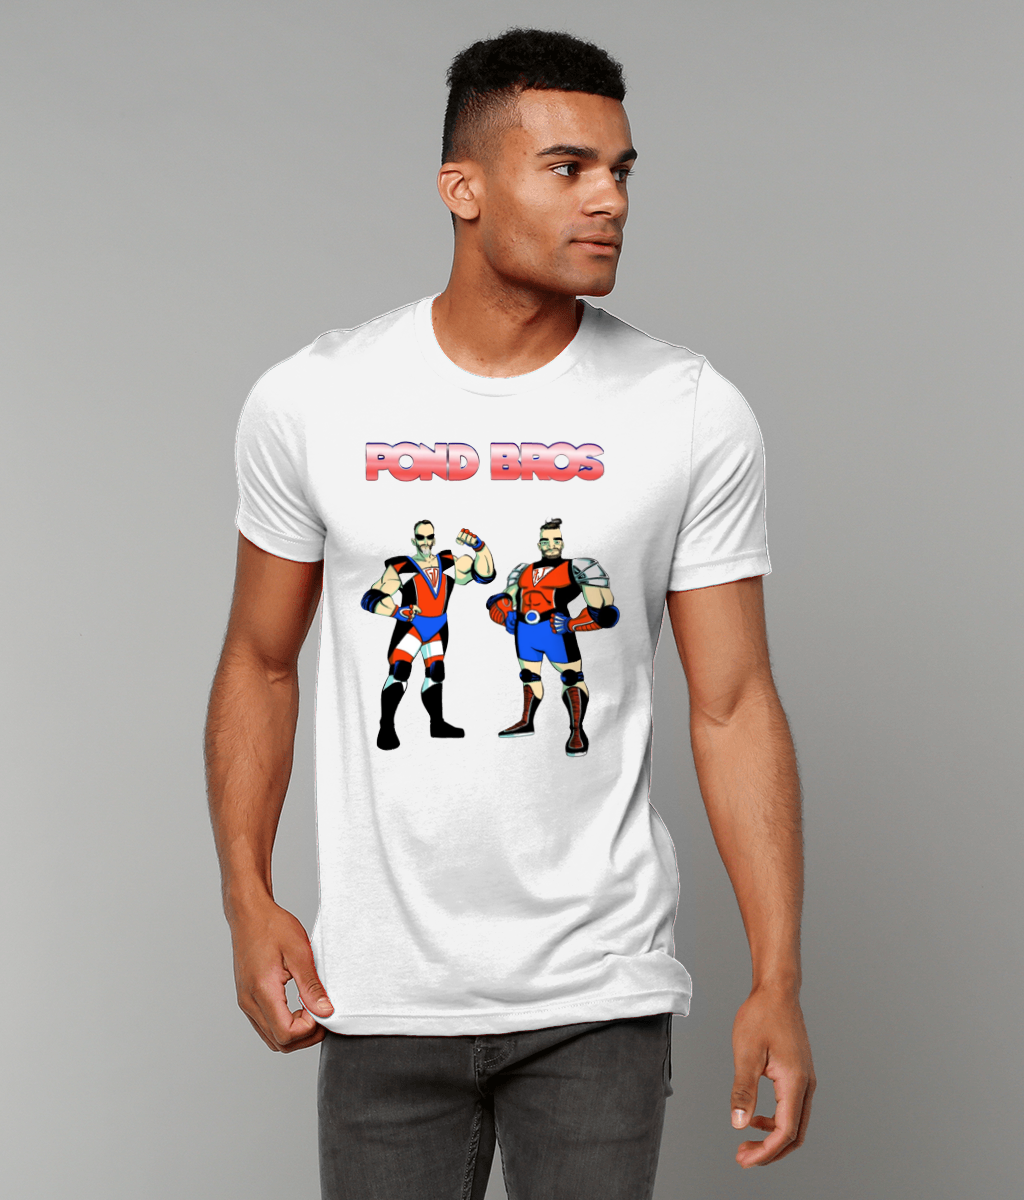 Pond Bros Promo T-shirt